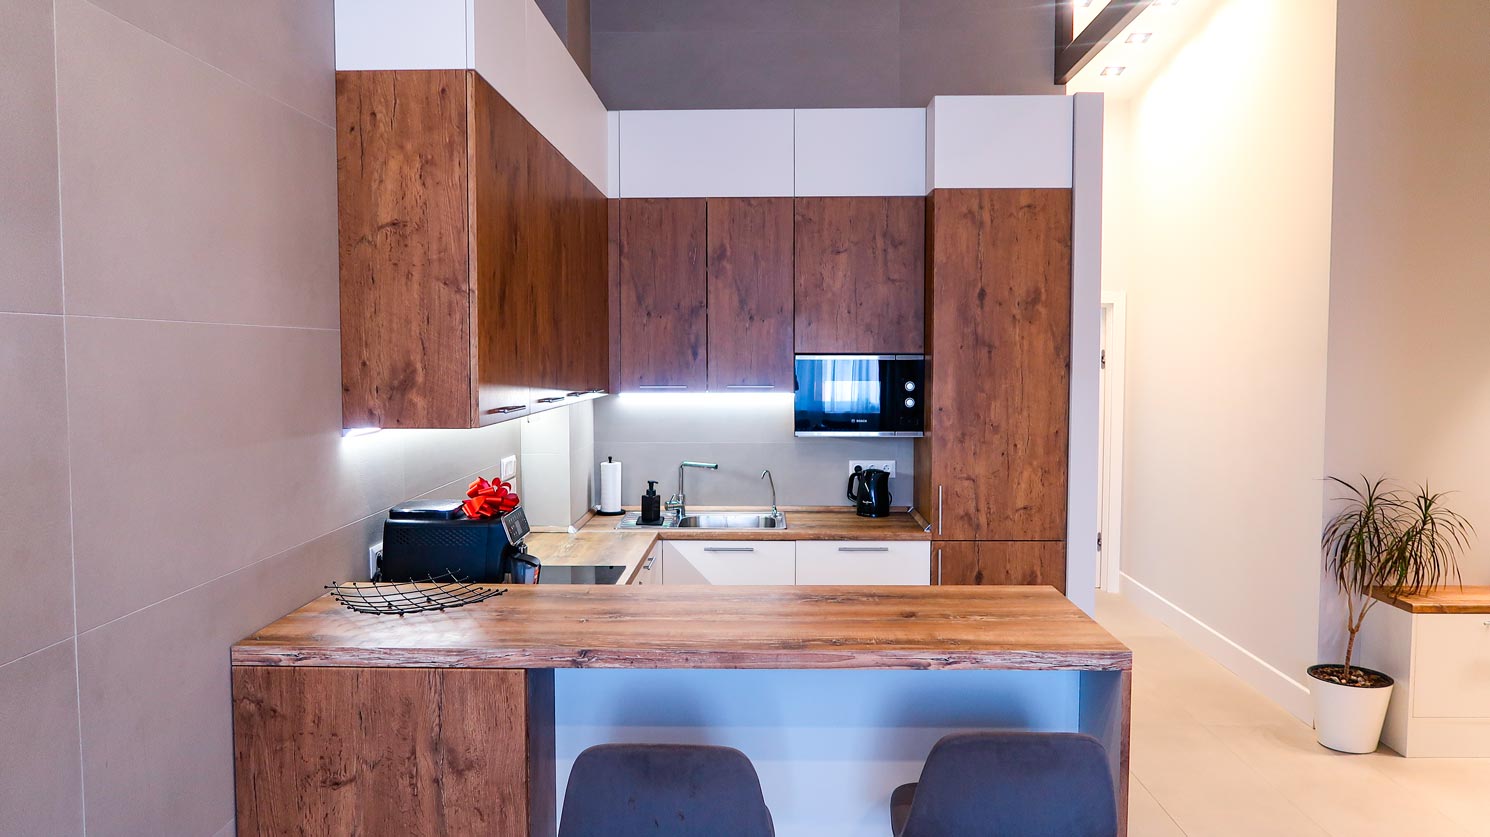 Решение для квартиры с потолками переменной высоты: двухуровневая кухня и встроенные шкафы